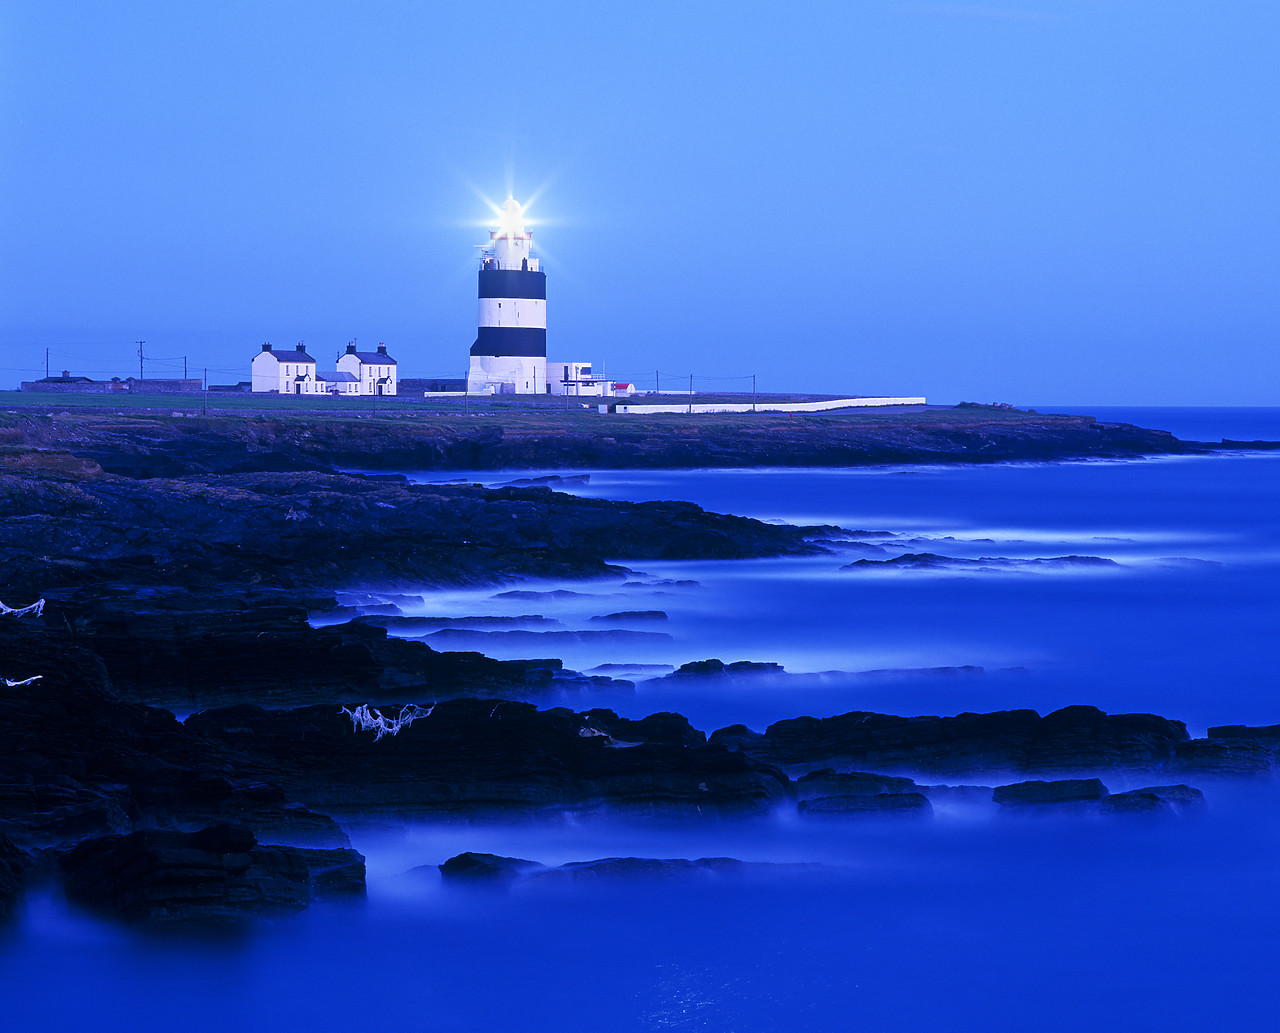 #990177-1 - Hookhead Lighthouse, Co. Wexford, Ireland